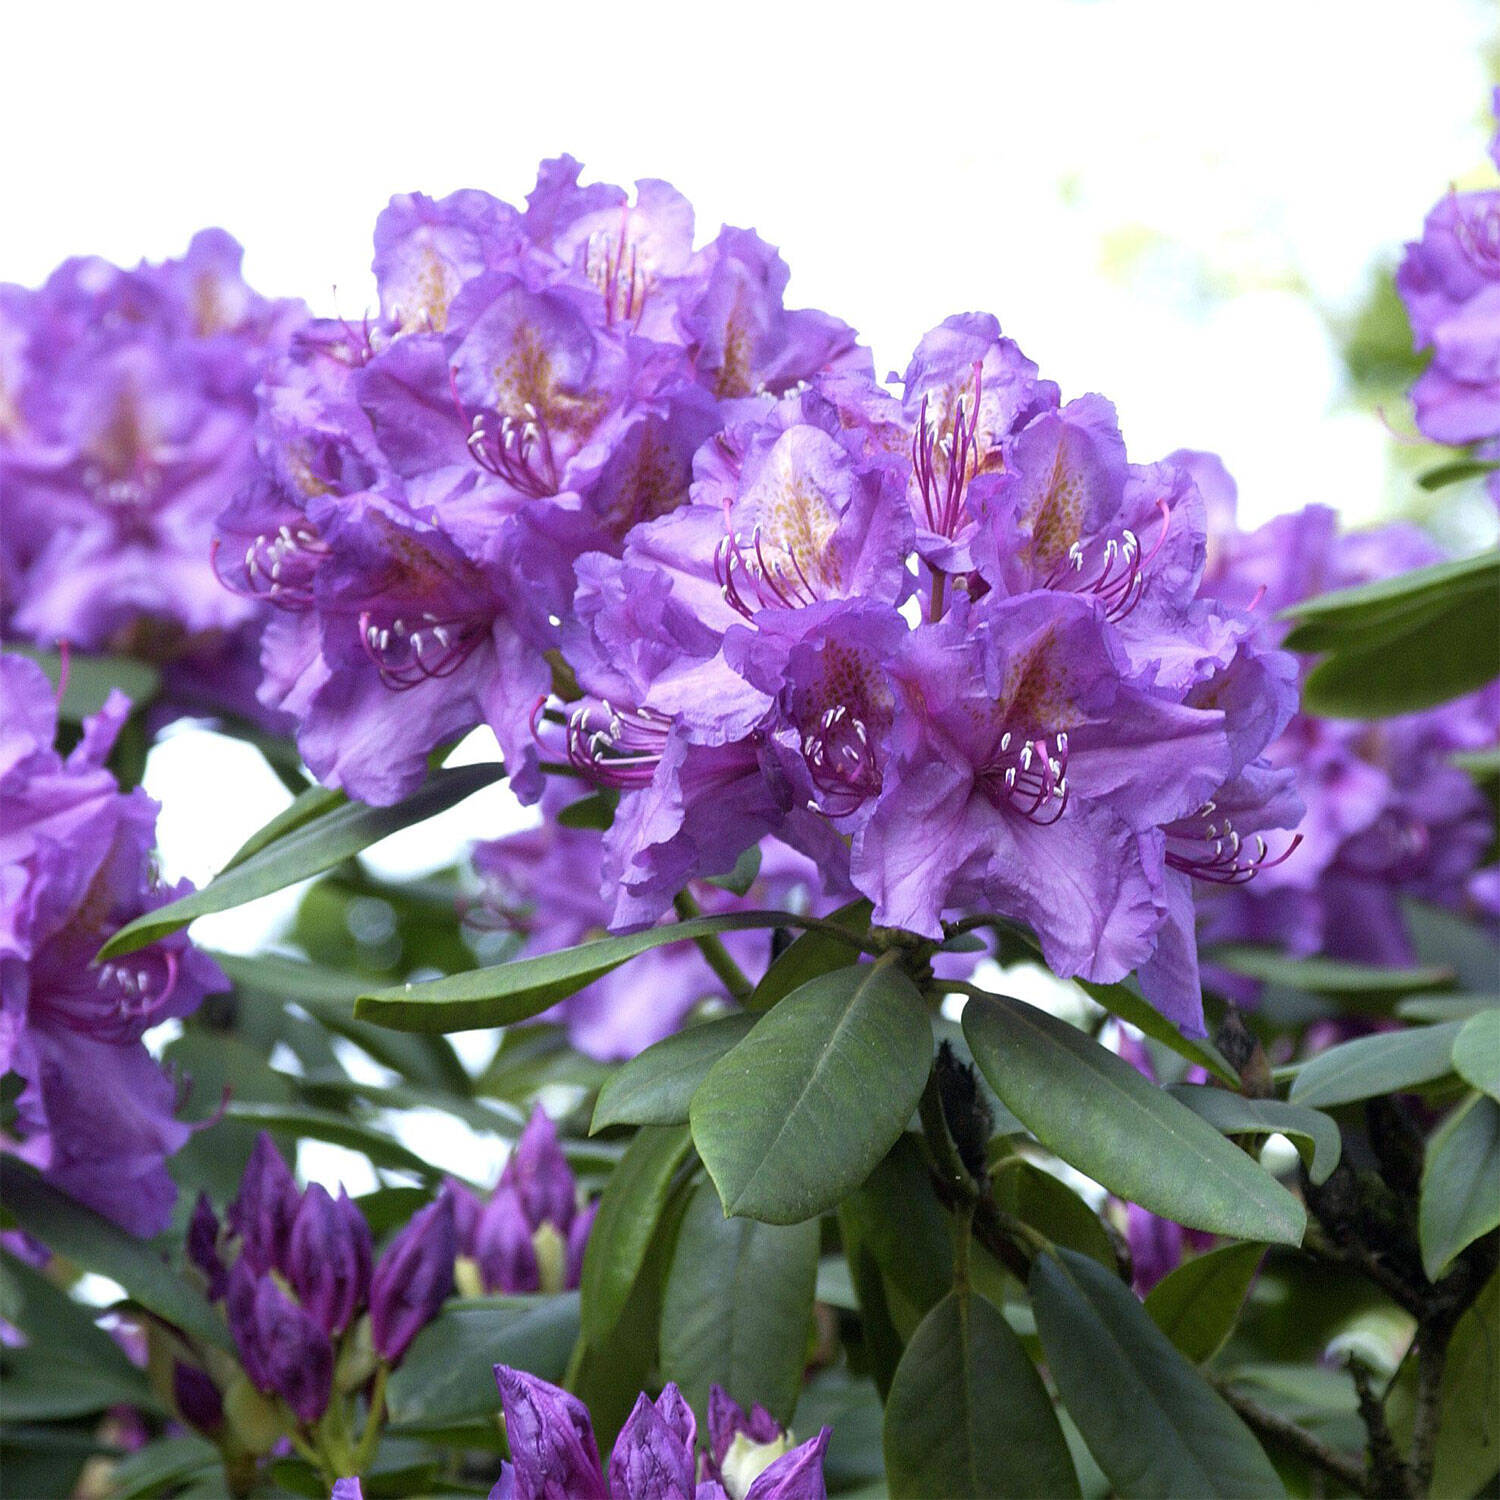 Kategorie <b>Hecken </b> - Rhododendron 'Lee's Dark Purple' - Rhododendron Hybride 'Lee's Dark Purple'